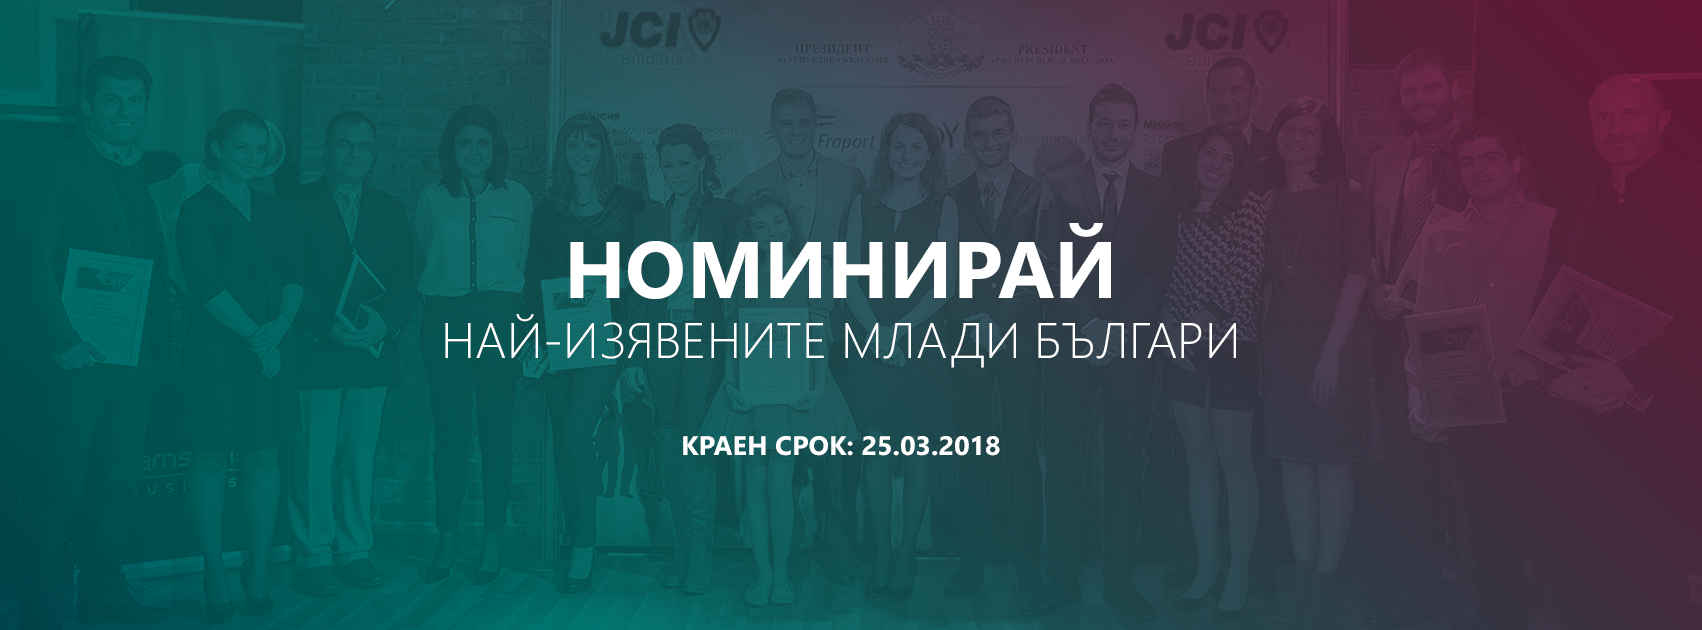 Търсят се десетте най-изявени млади личности на България за 2018 г.